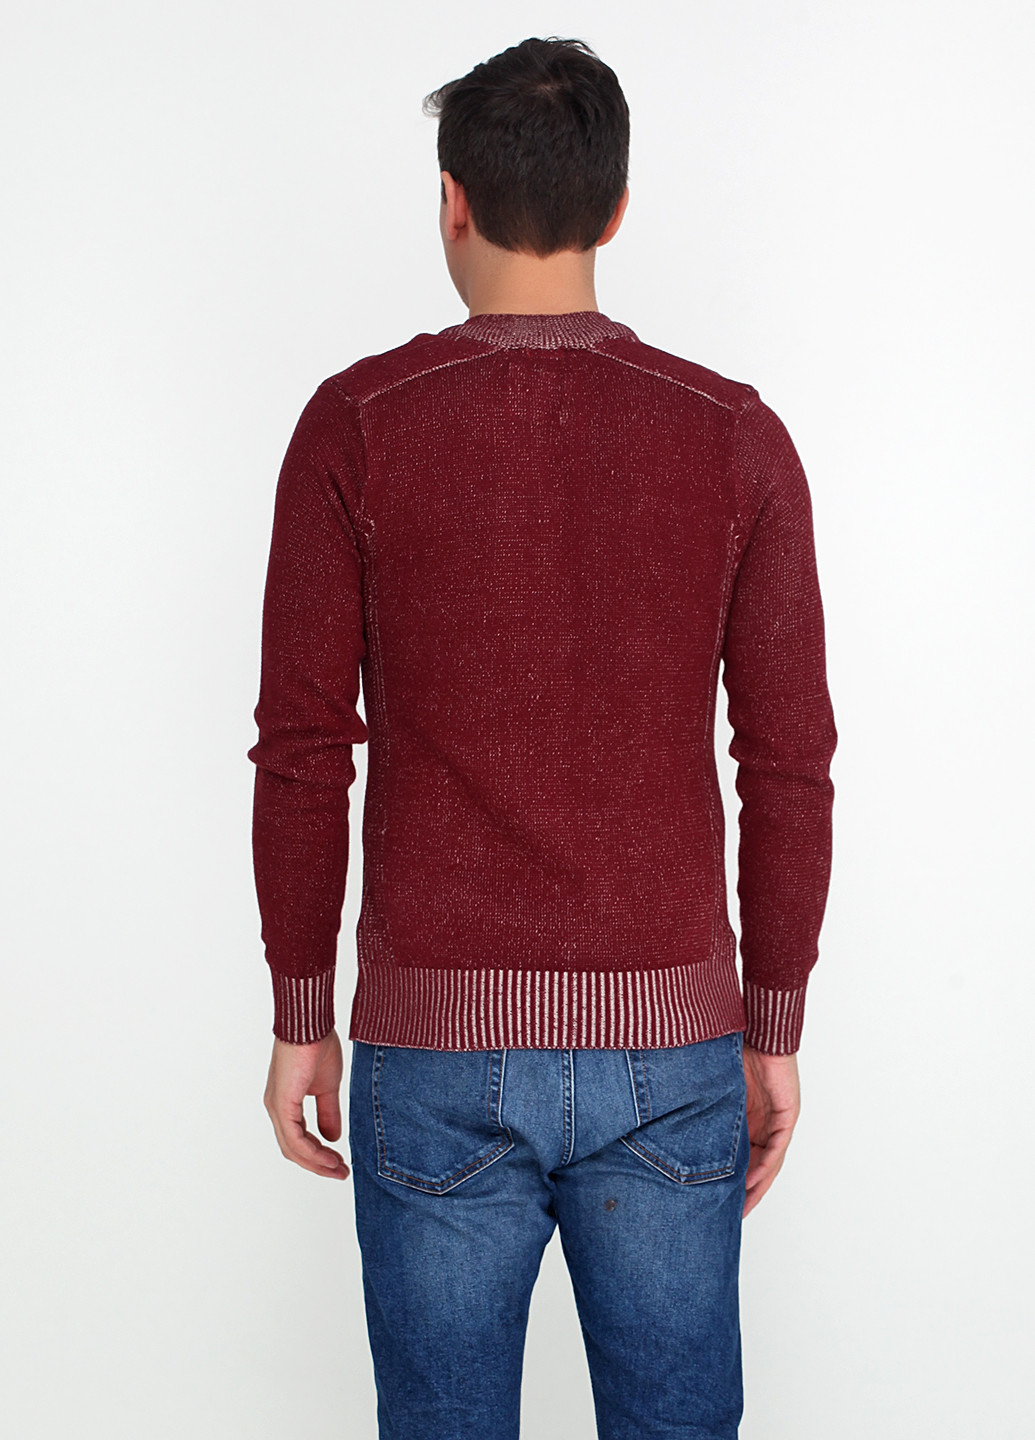 Бордовый зимний пуловер пуловер 98-86